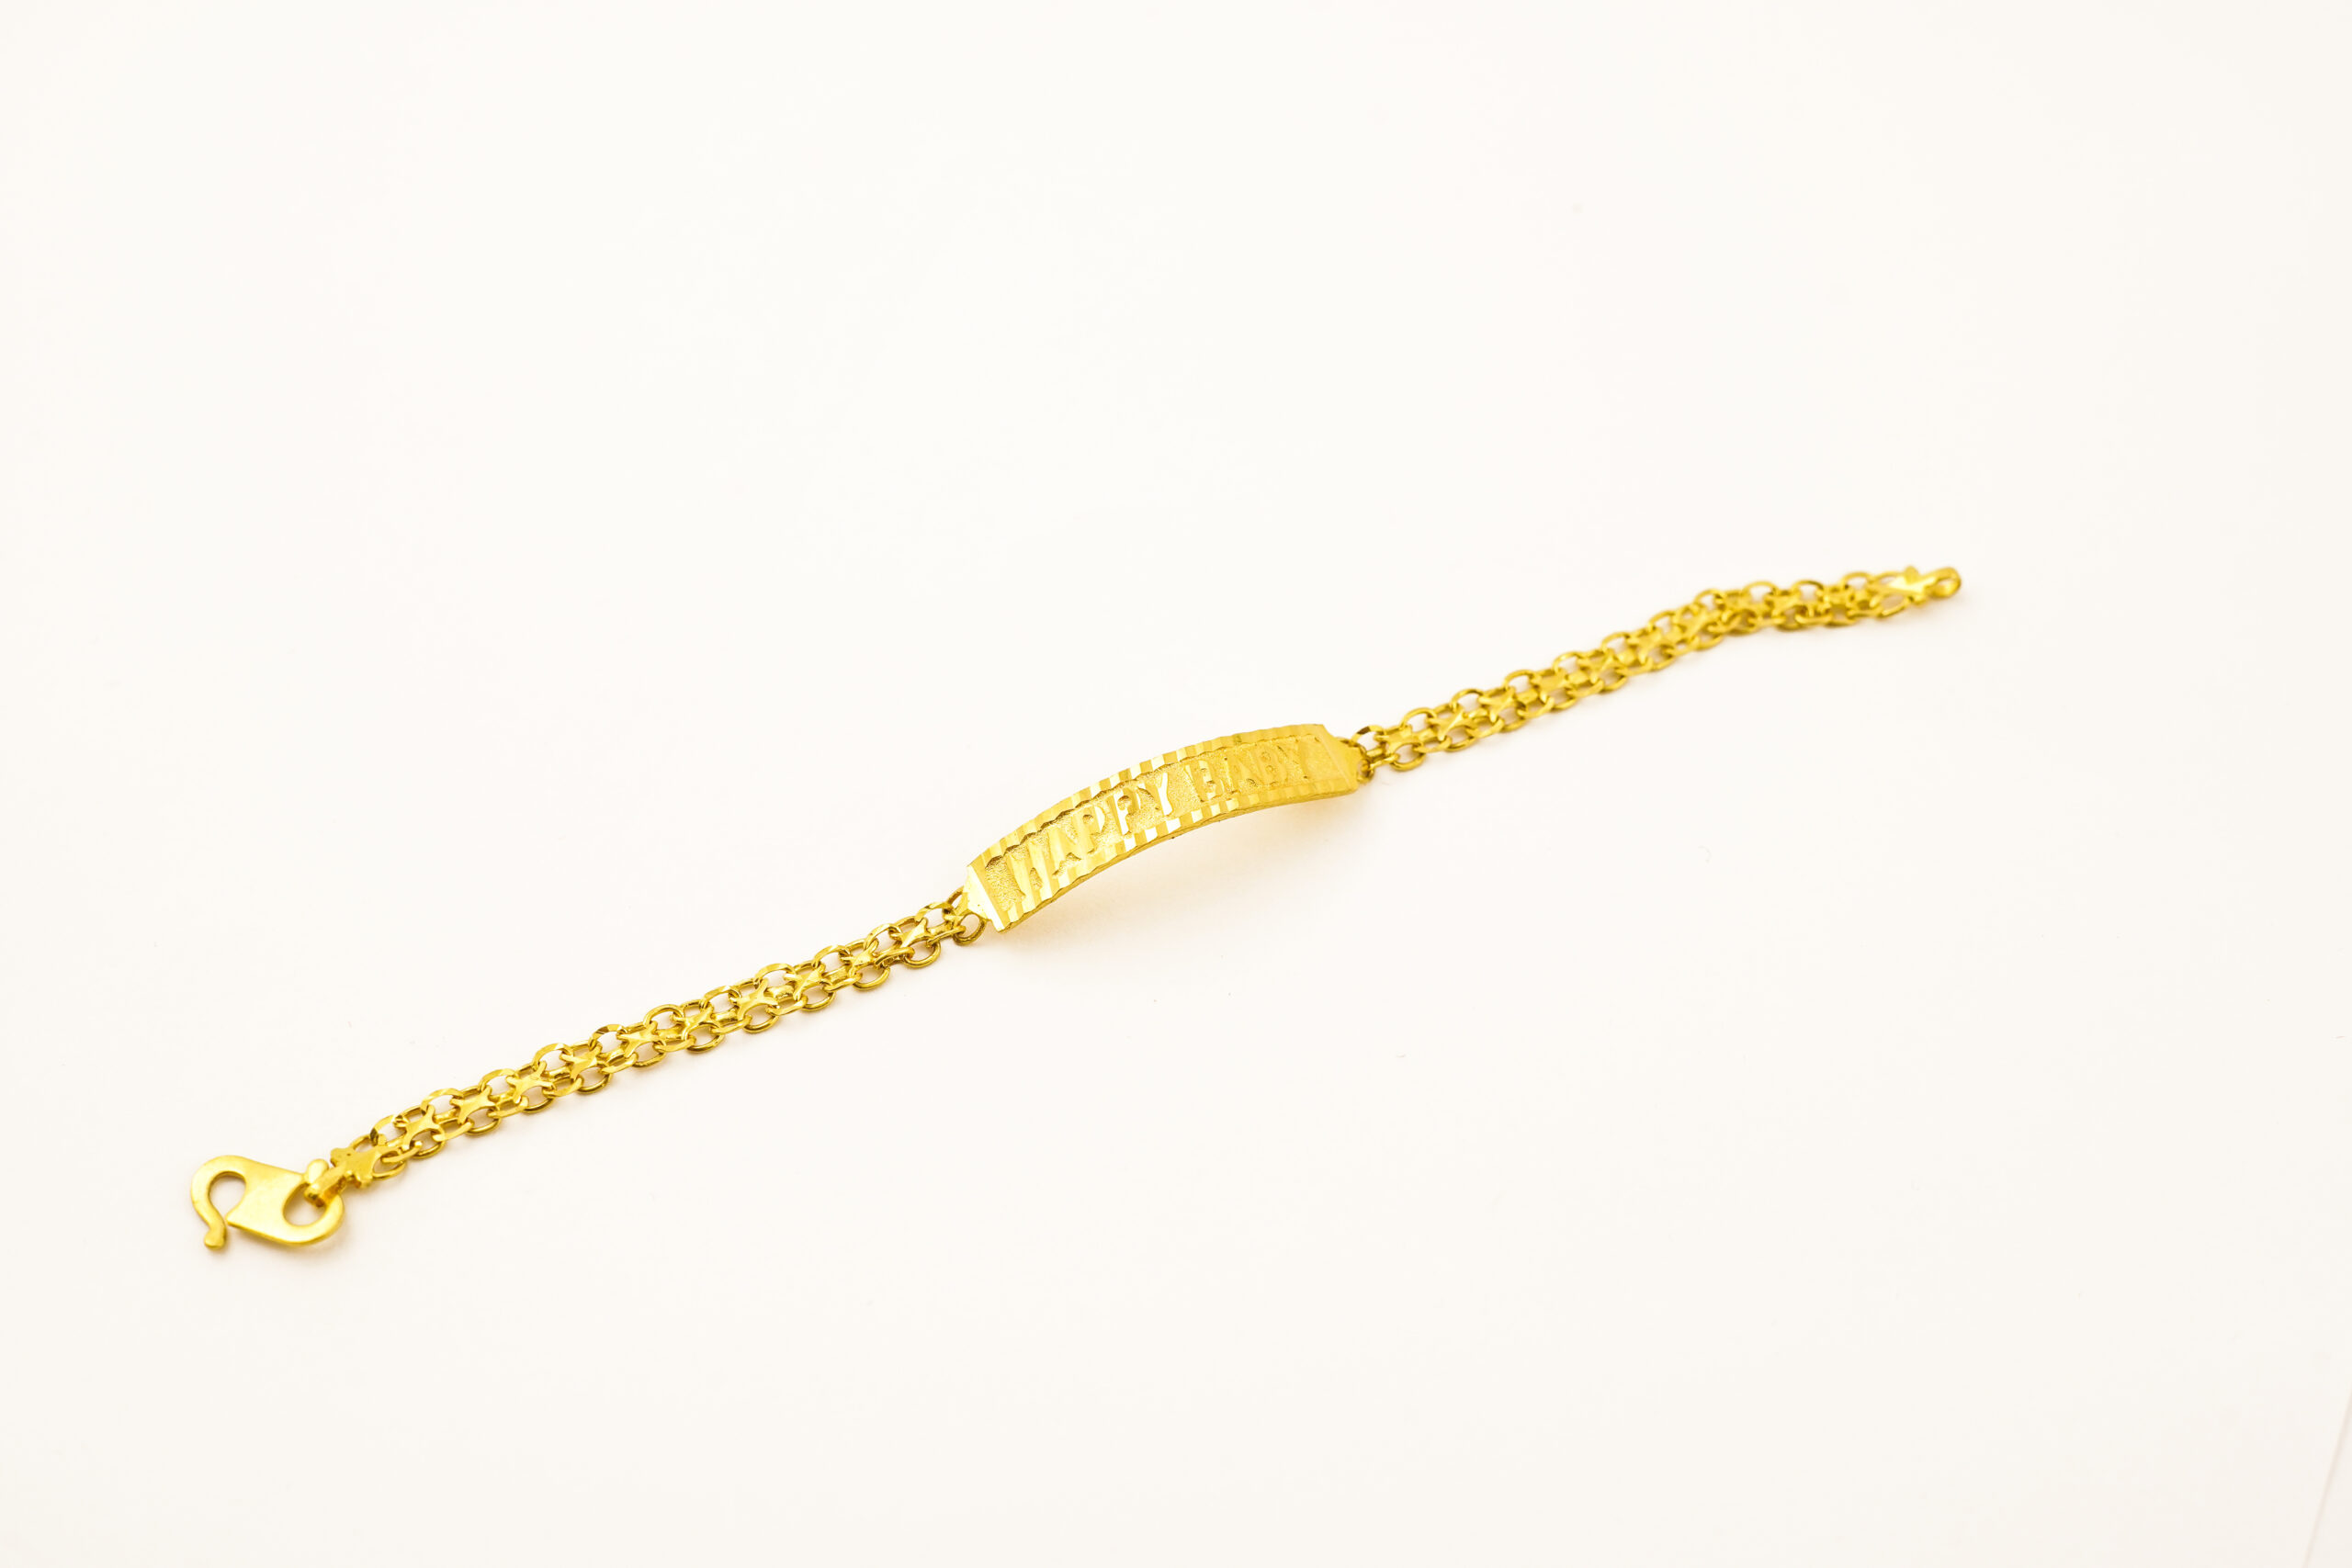 22K Gold Bracelet for Baby - 235-GBR3044 in 3.750 Grams